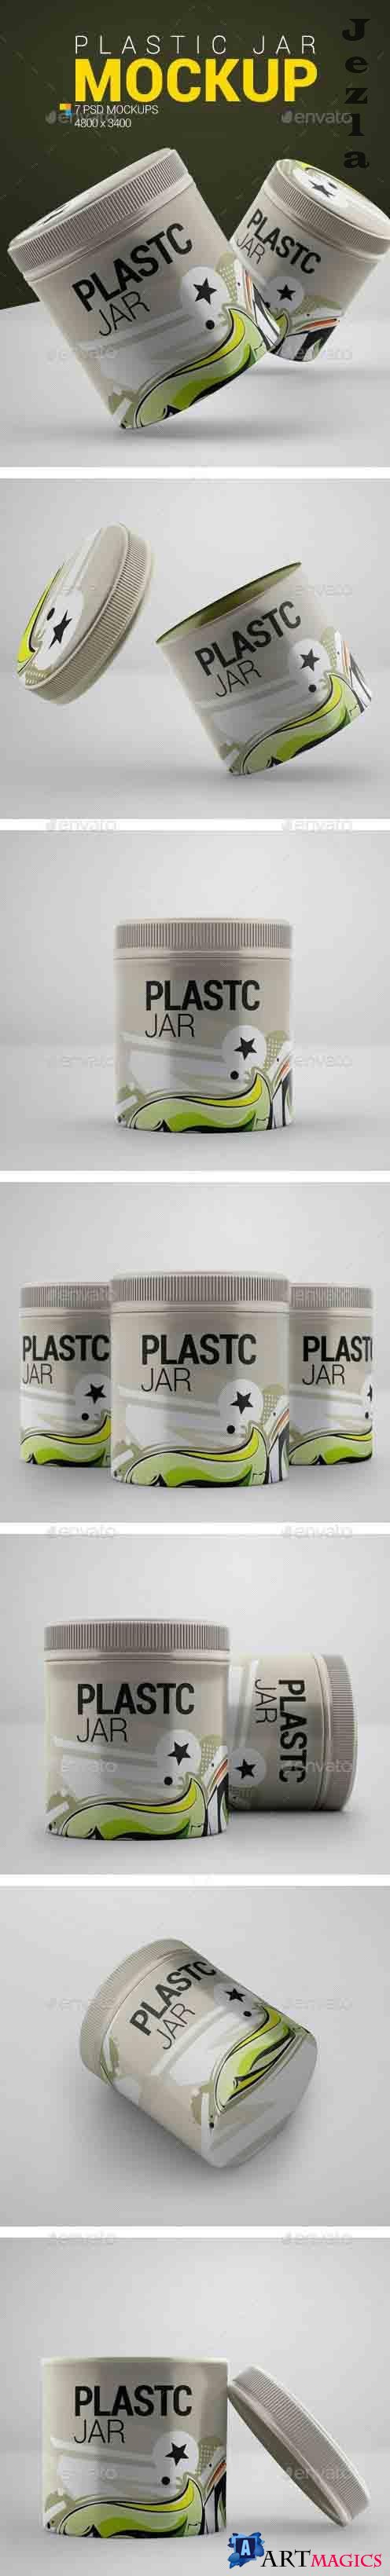 Plastic Jar Mockup 23991692